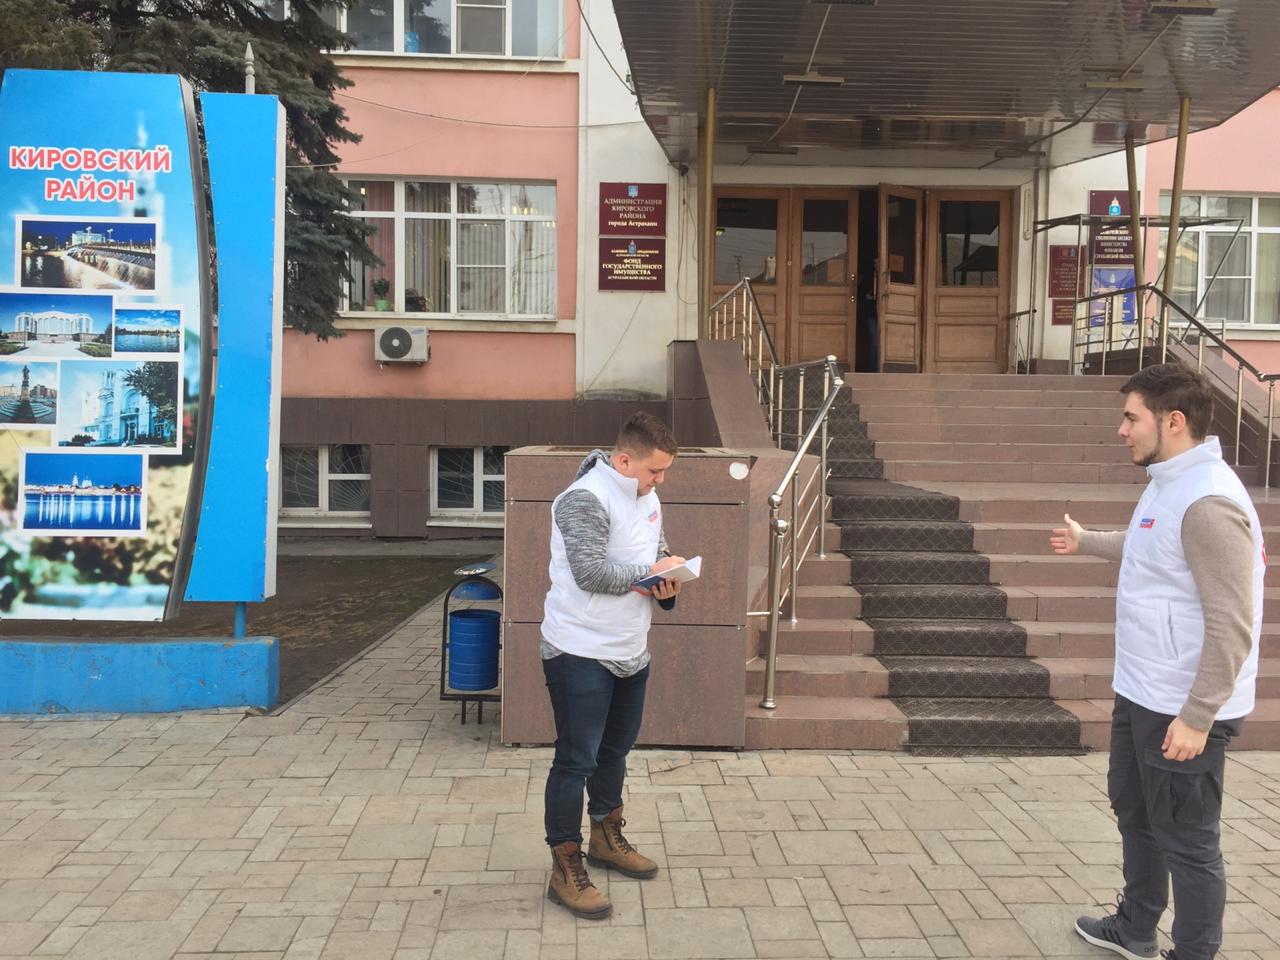 image 19 02 20 12 55 3 В Астрахани здания двух администраций оказались недоступны для инвалидов